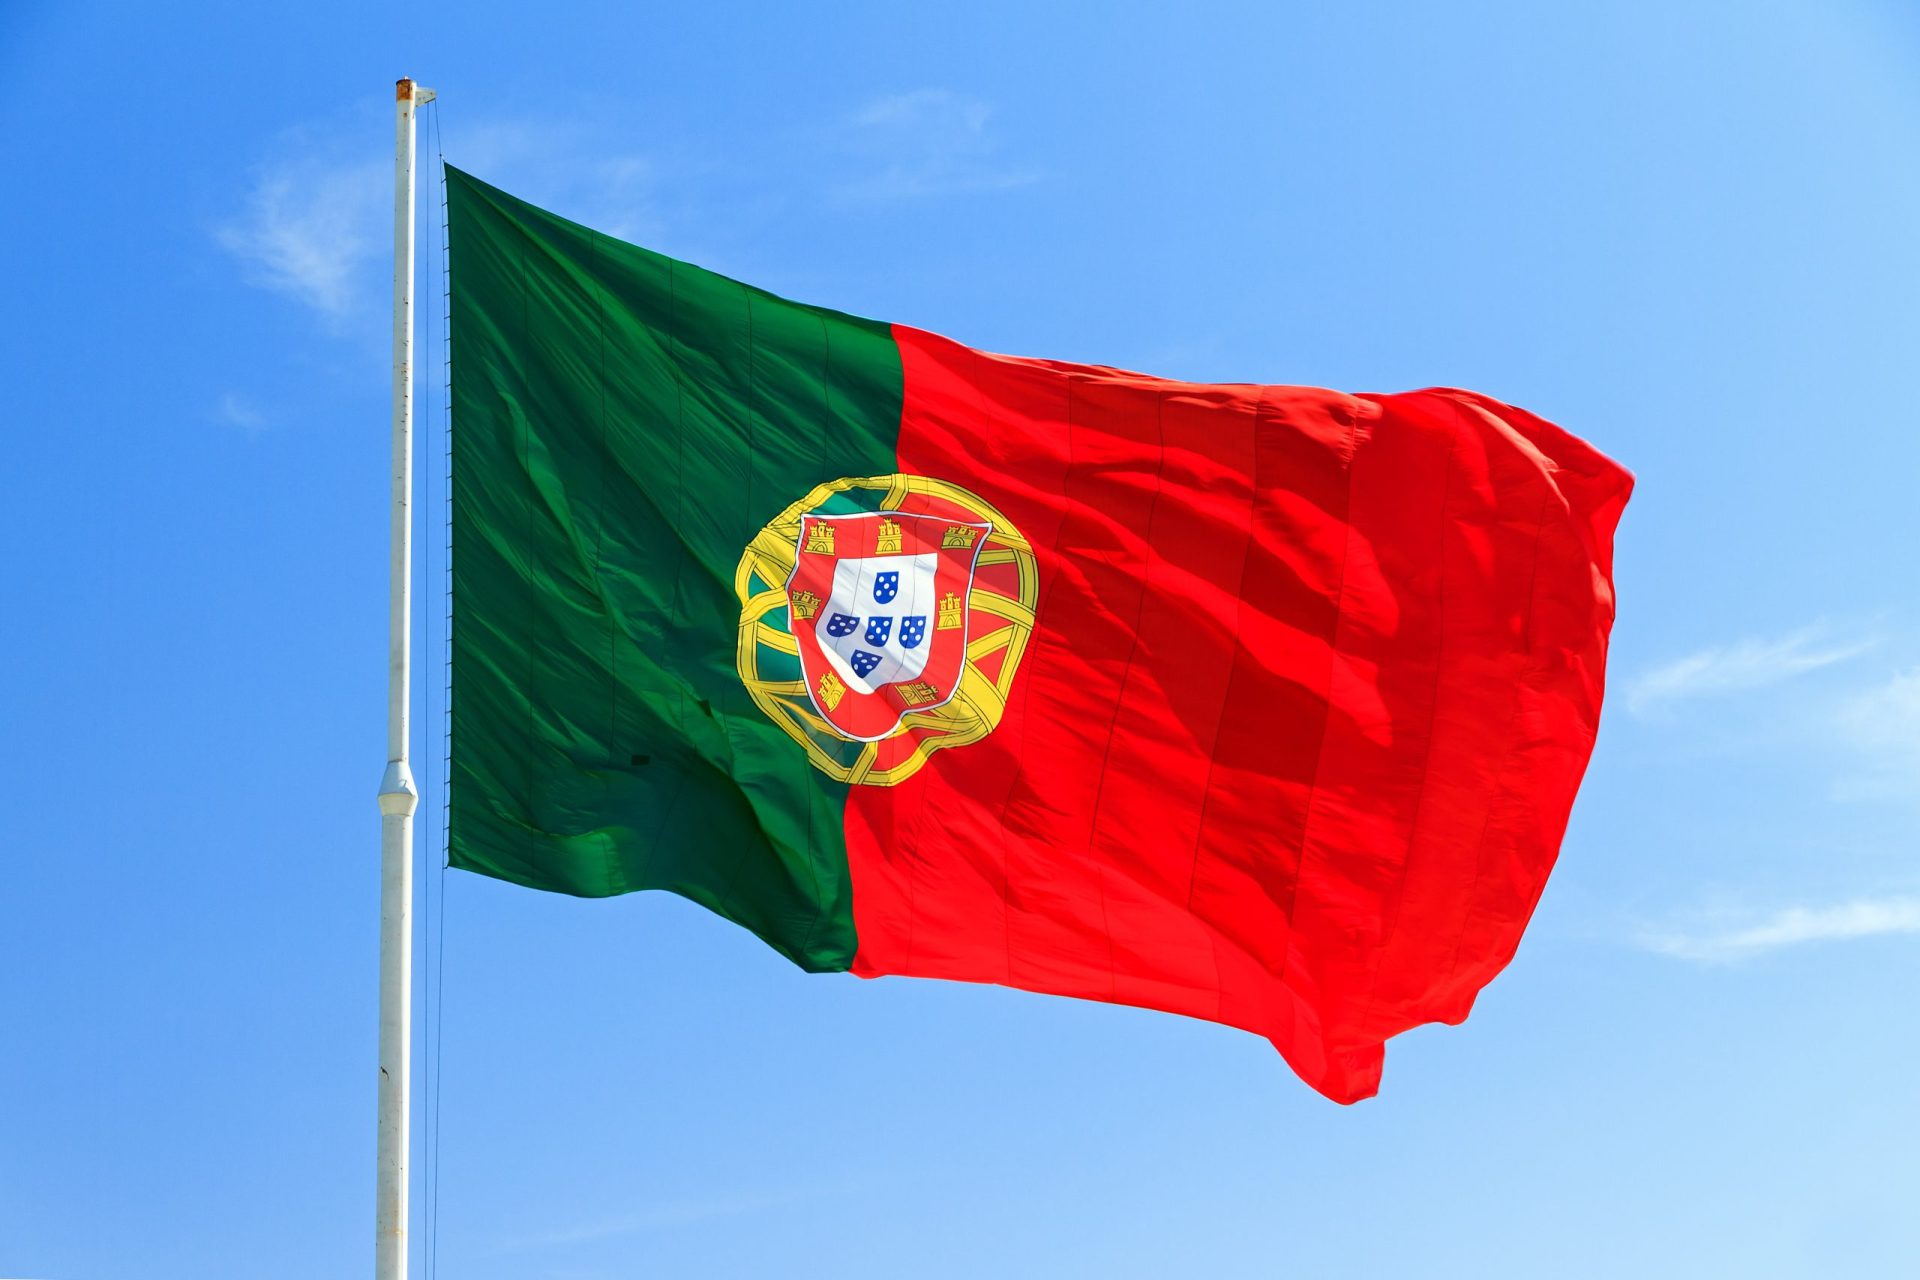 O que há de melhor em Portugal?